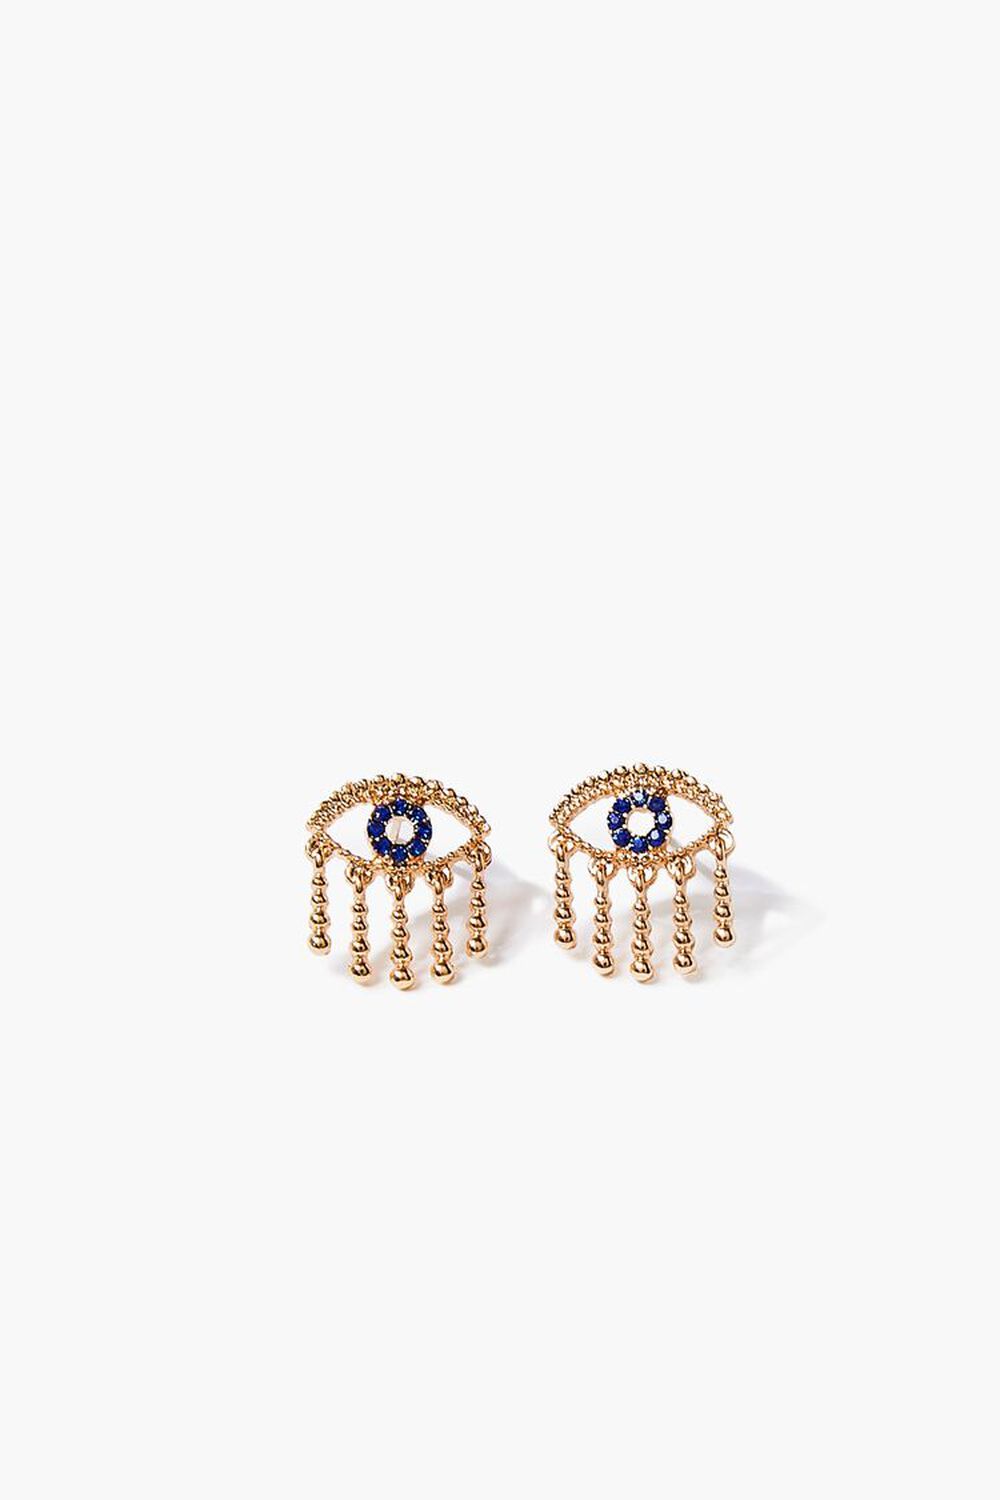 Rhinestone Eye Stud Earrings, image 1